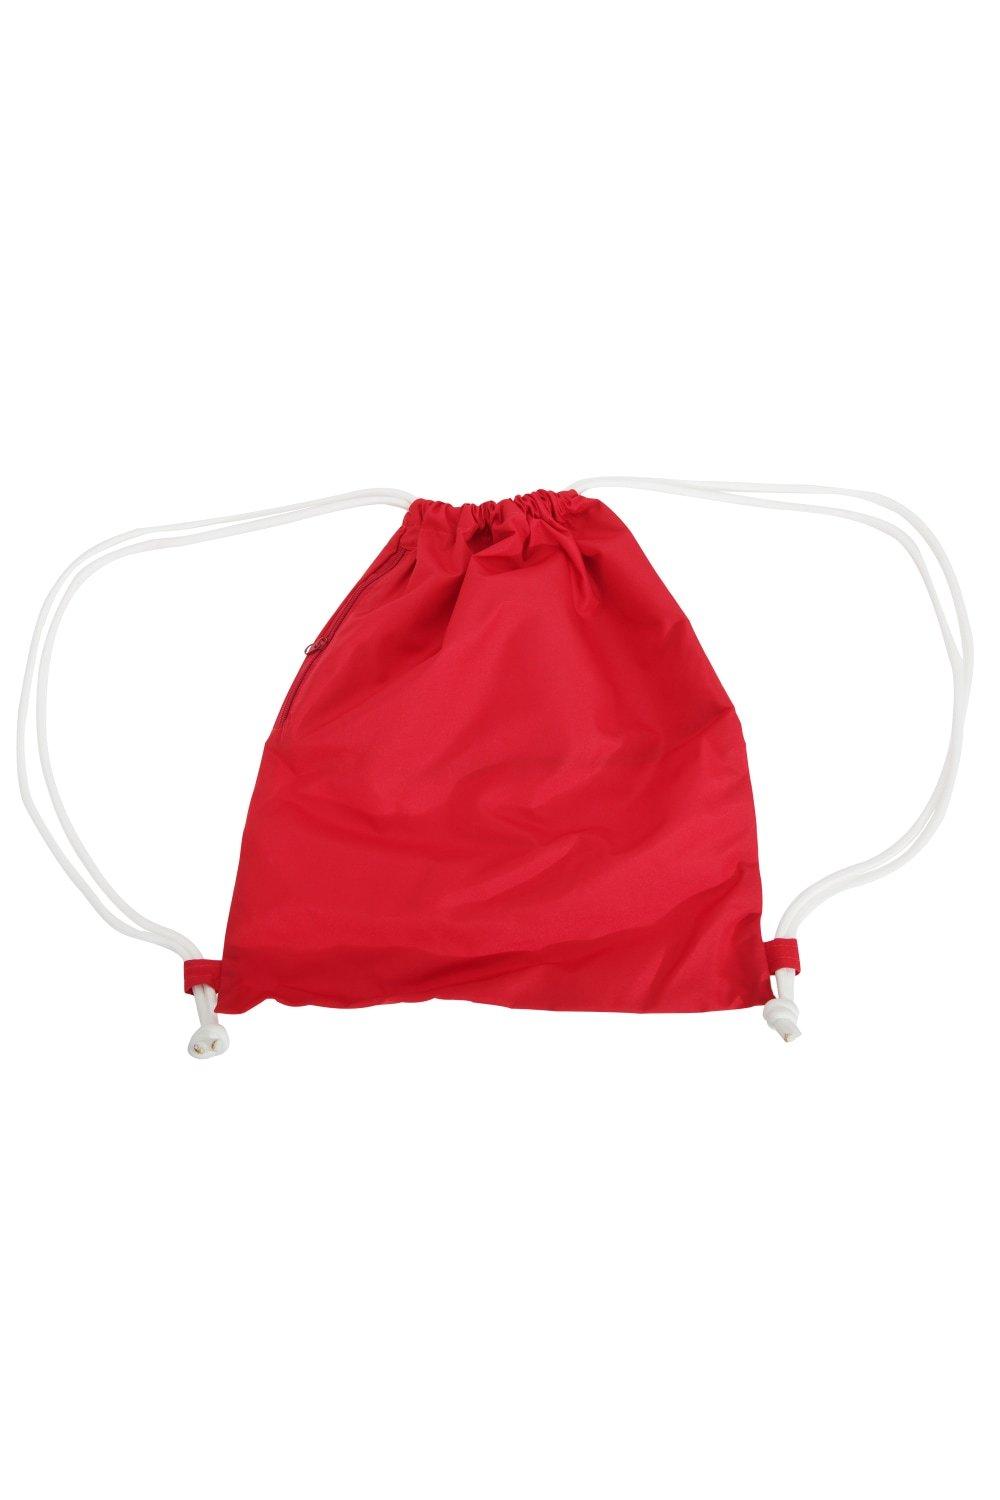 Сумка Icon на шнурке / Gymsac Bagbase, красный сумка urban gymsac на шнурке sol s белый